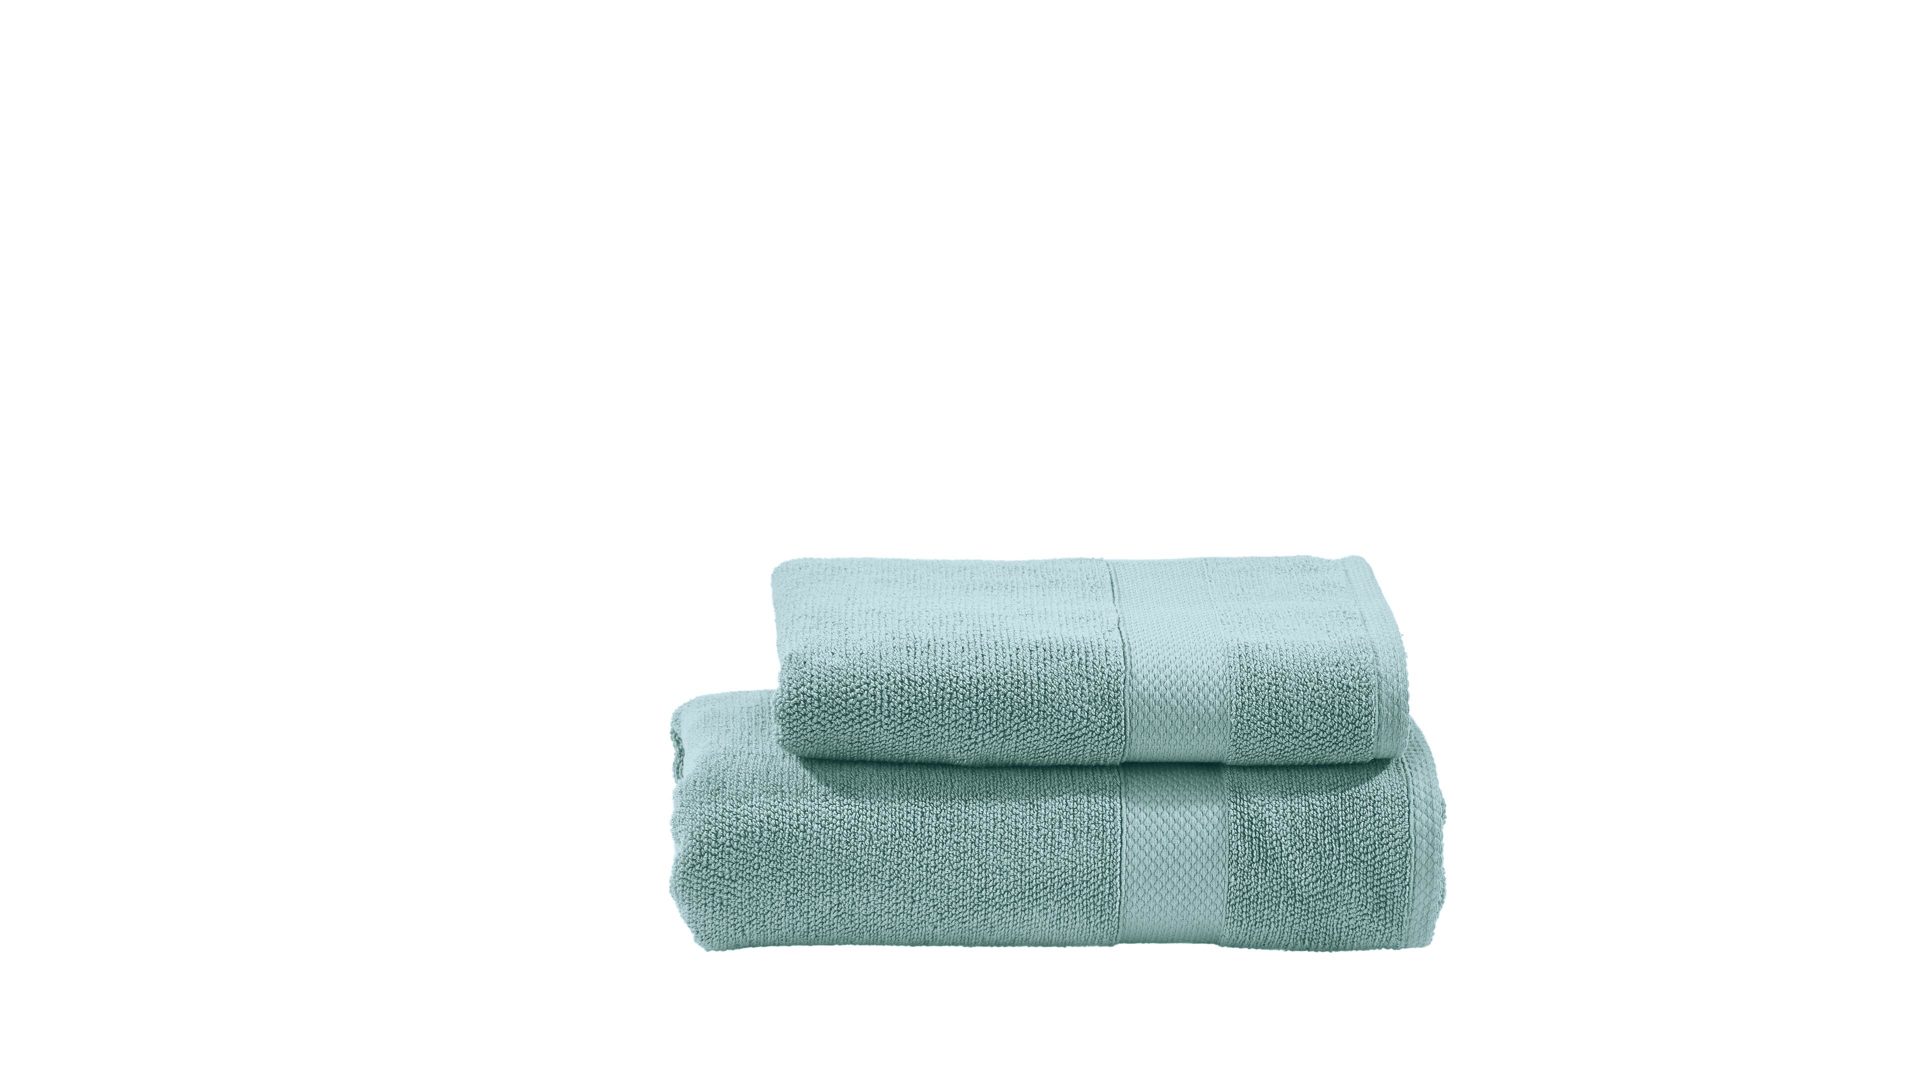 Hamamtuch Done® by karabel home company aus Stoff in Blau DONE® Handtuch-Set Deluxe für Ihre Heimtextilien blaue Baumwolle – zweiteilig